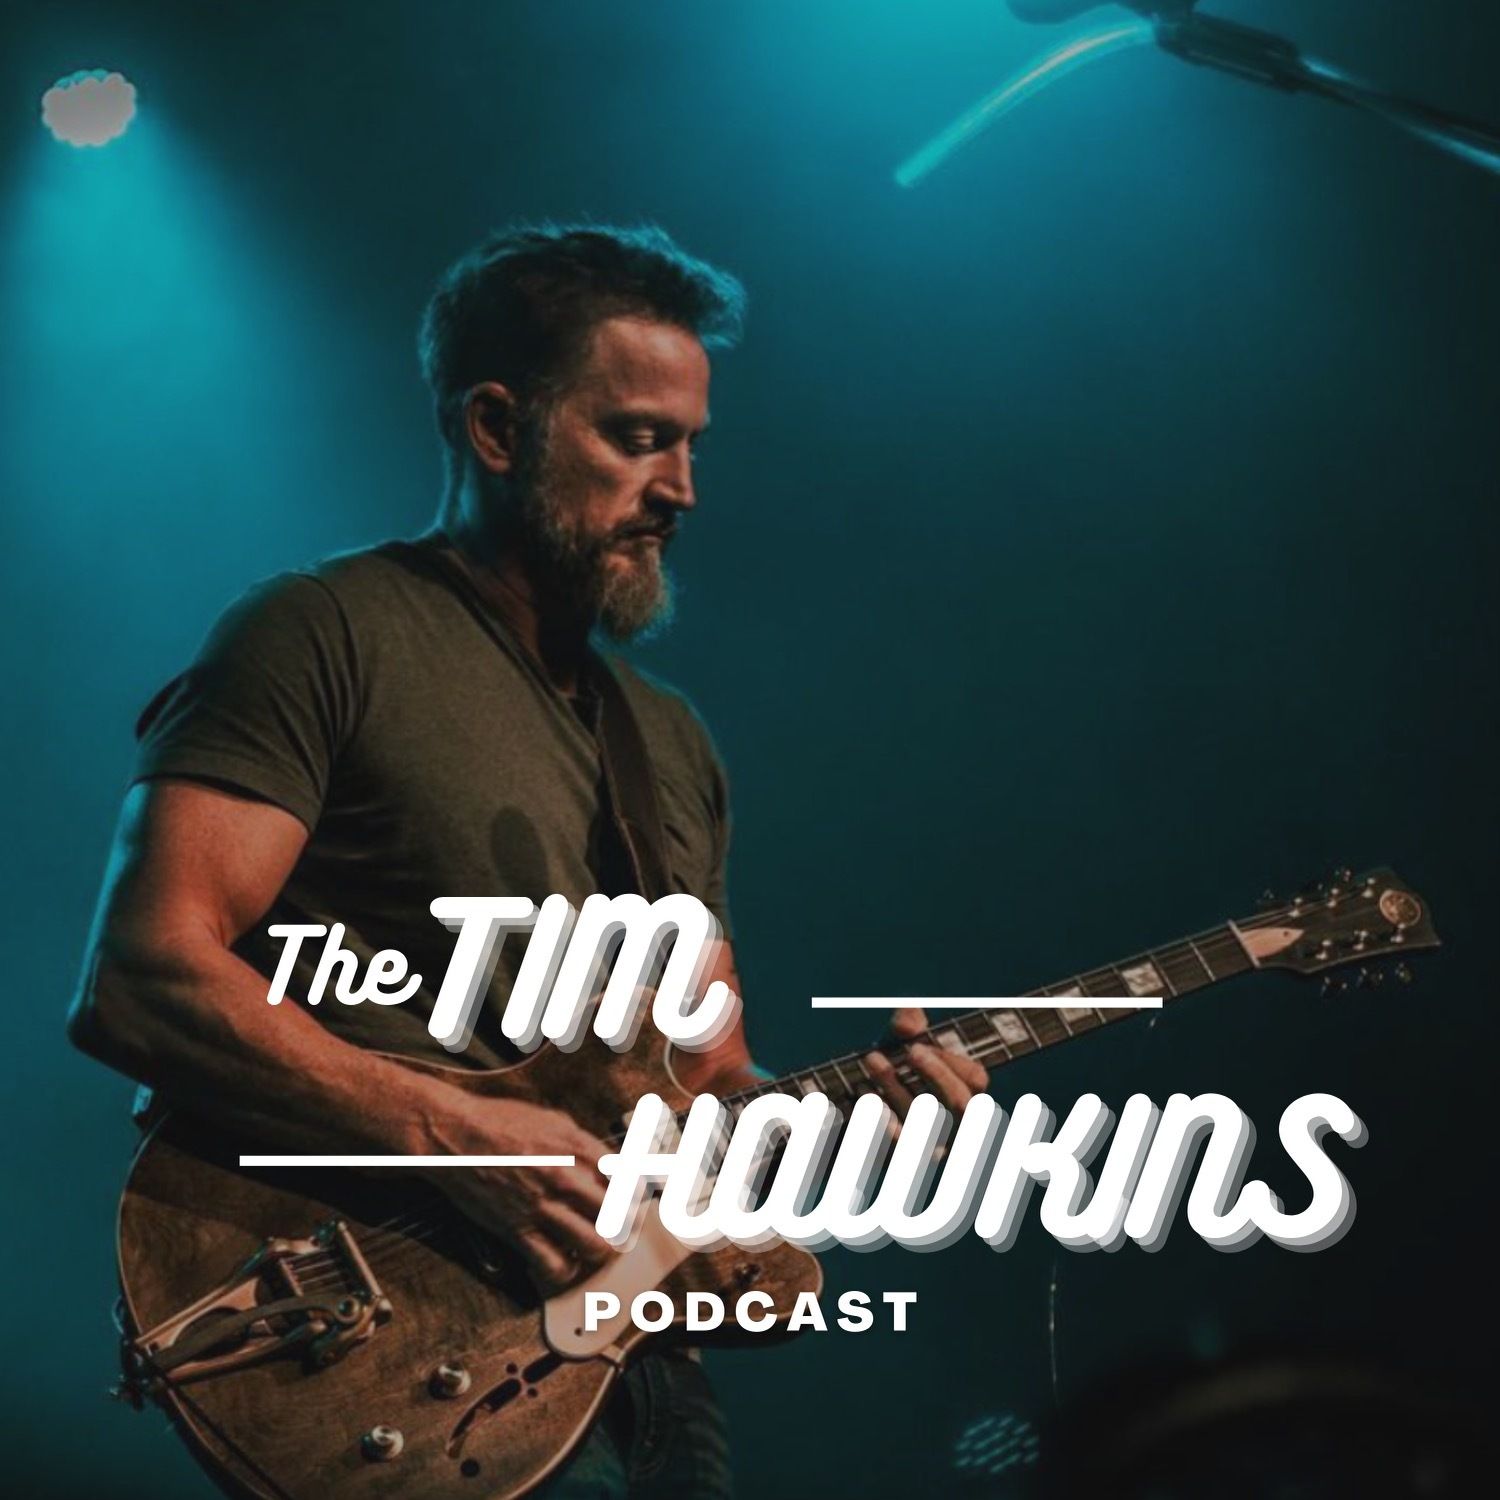 The Tim Hawkins Podcast:The Tim Hawkins Podcast